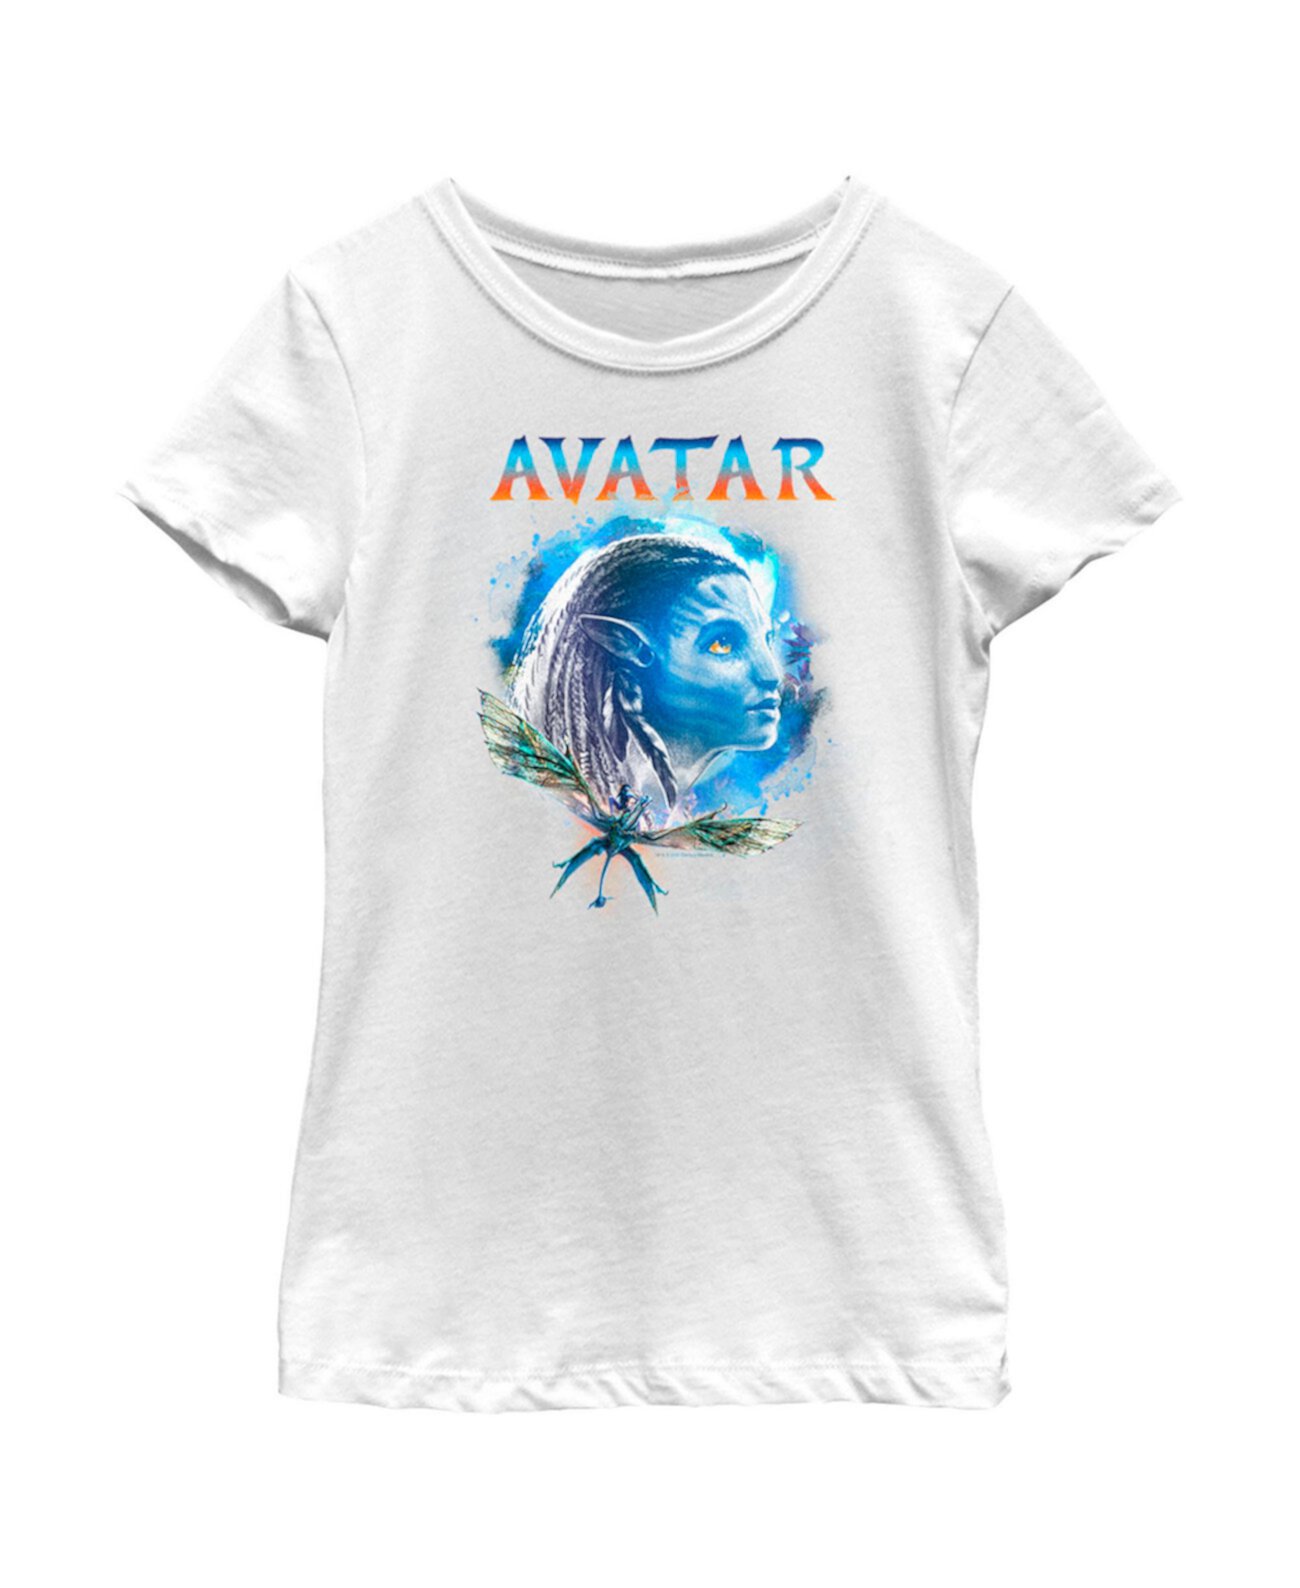 Детская футболка с портретом Нейтири «Аватар девушки: Путь воды» 20th Century Fox